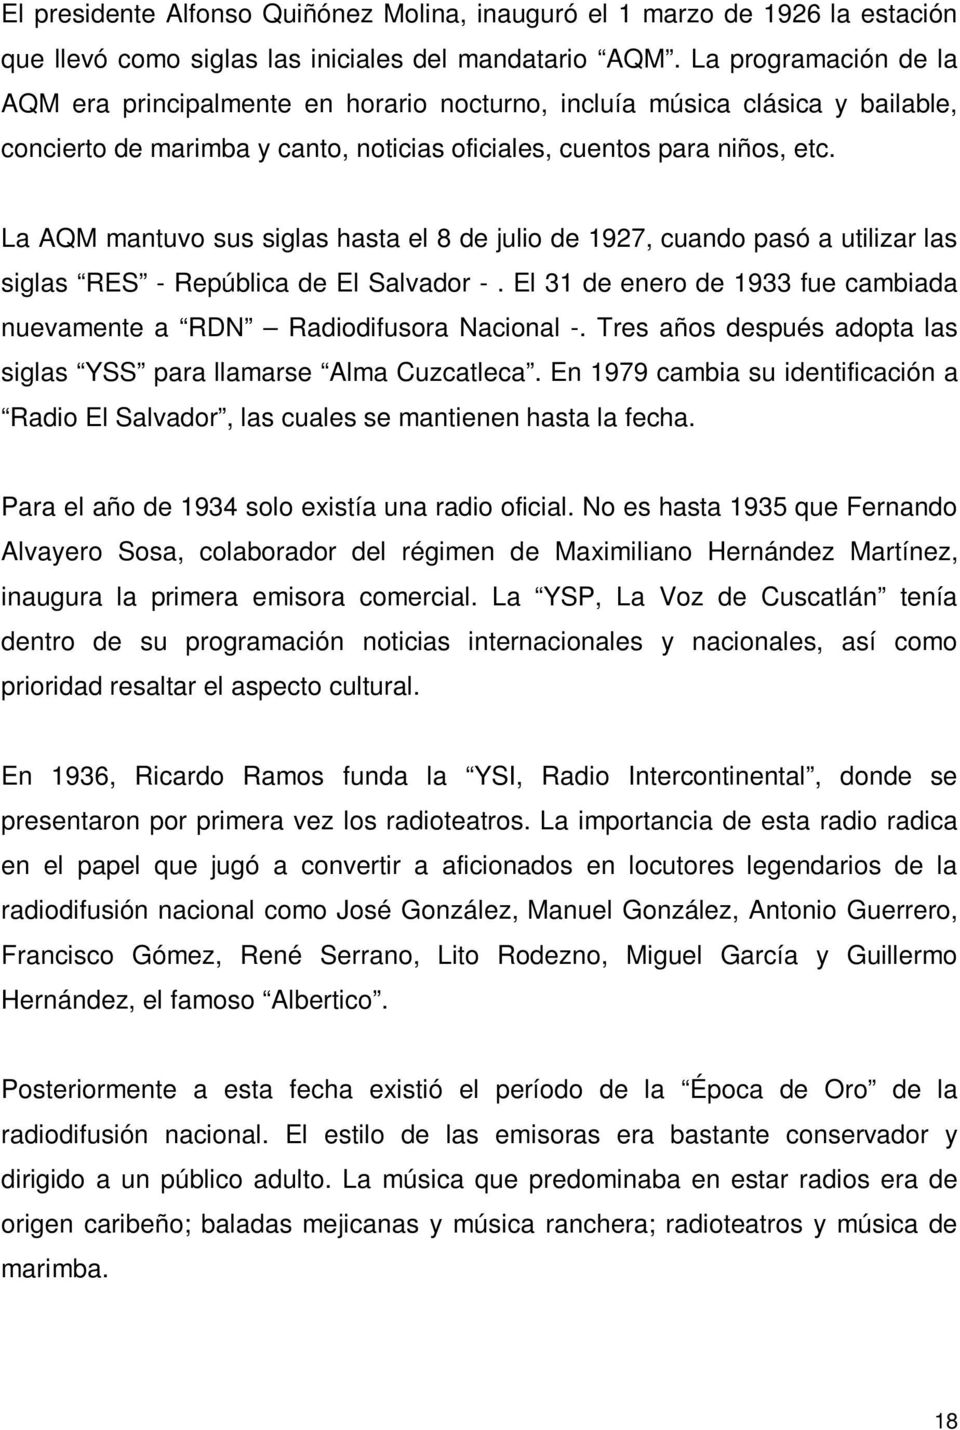 La AQM mantuvo sus siglas hasta el 8 de julio de 1927, cuando pasó a utilizar las siglas RES - República de El Salvador -.